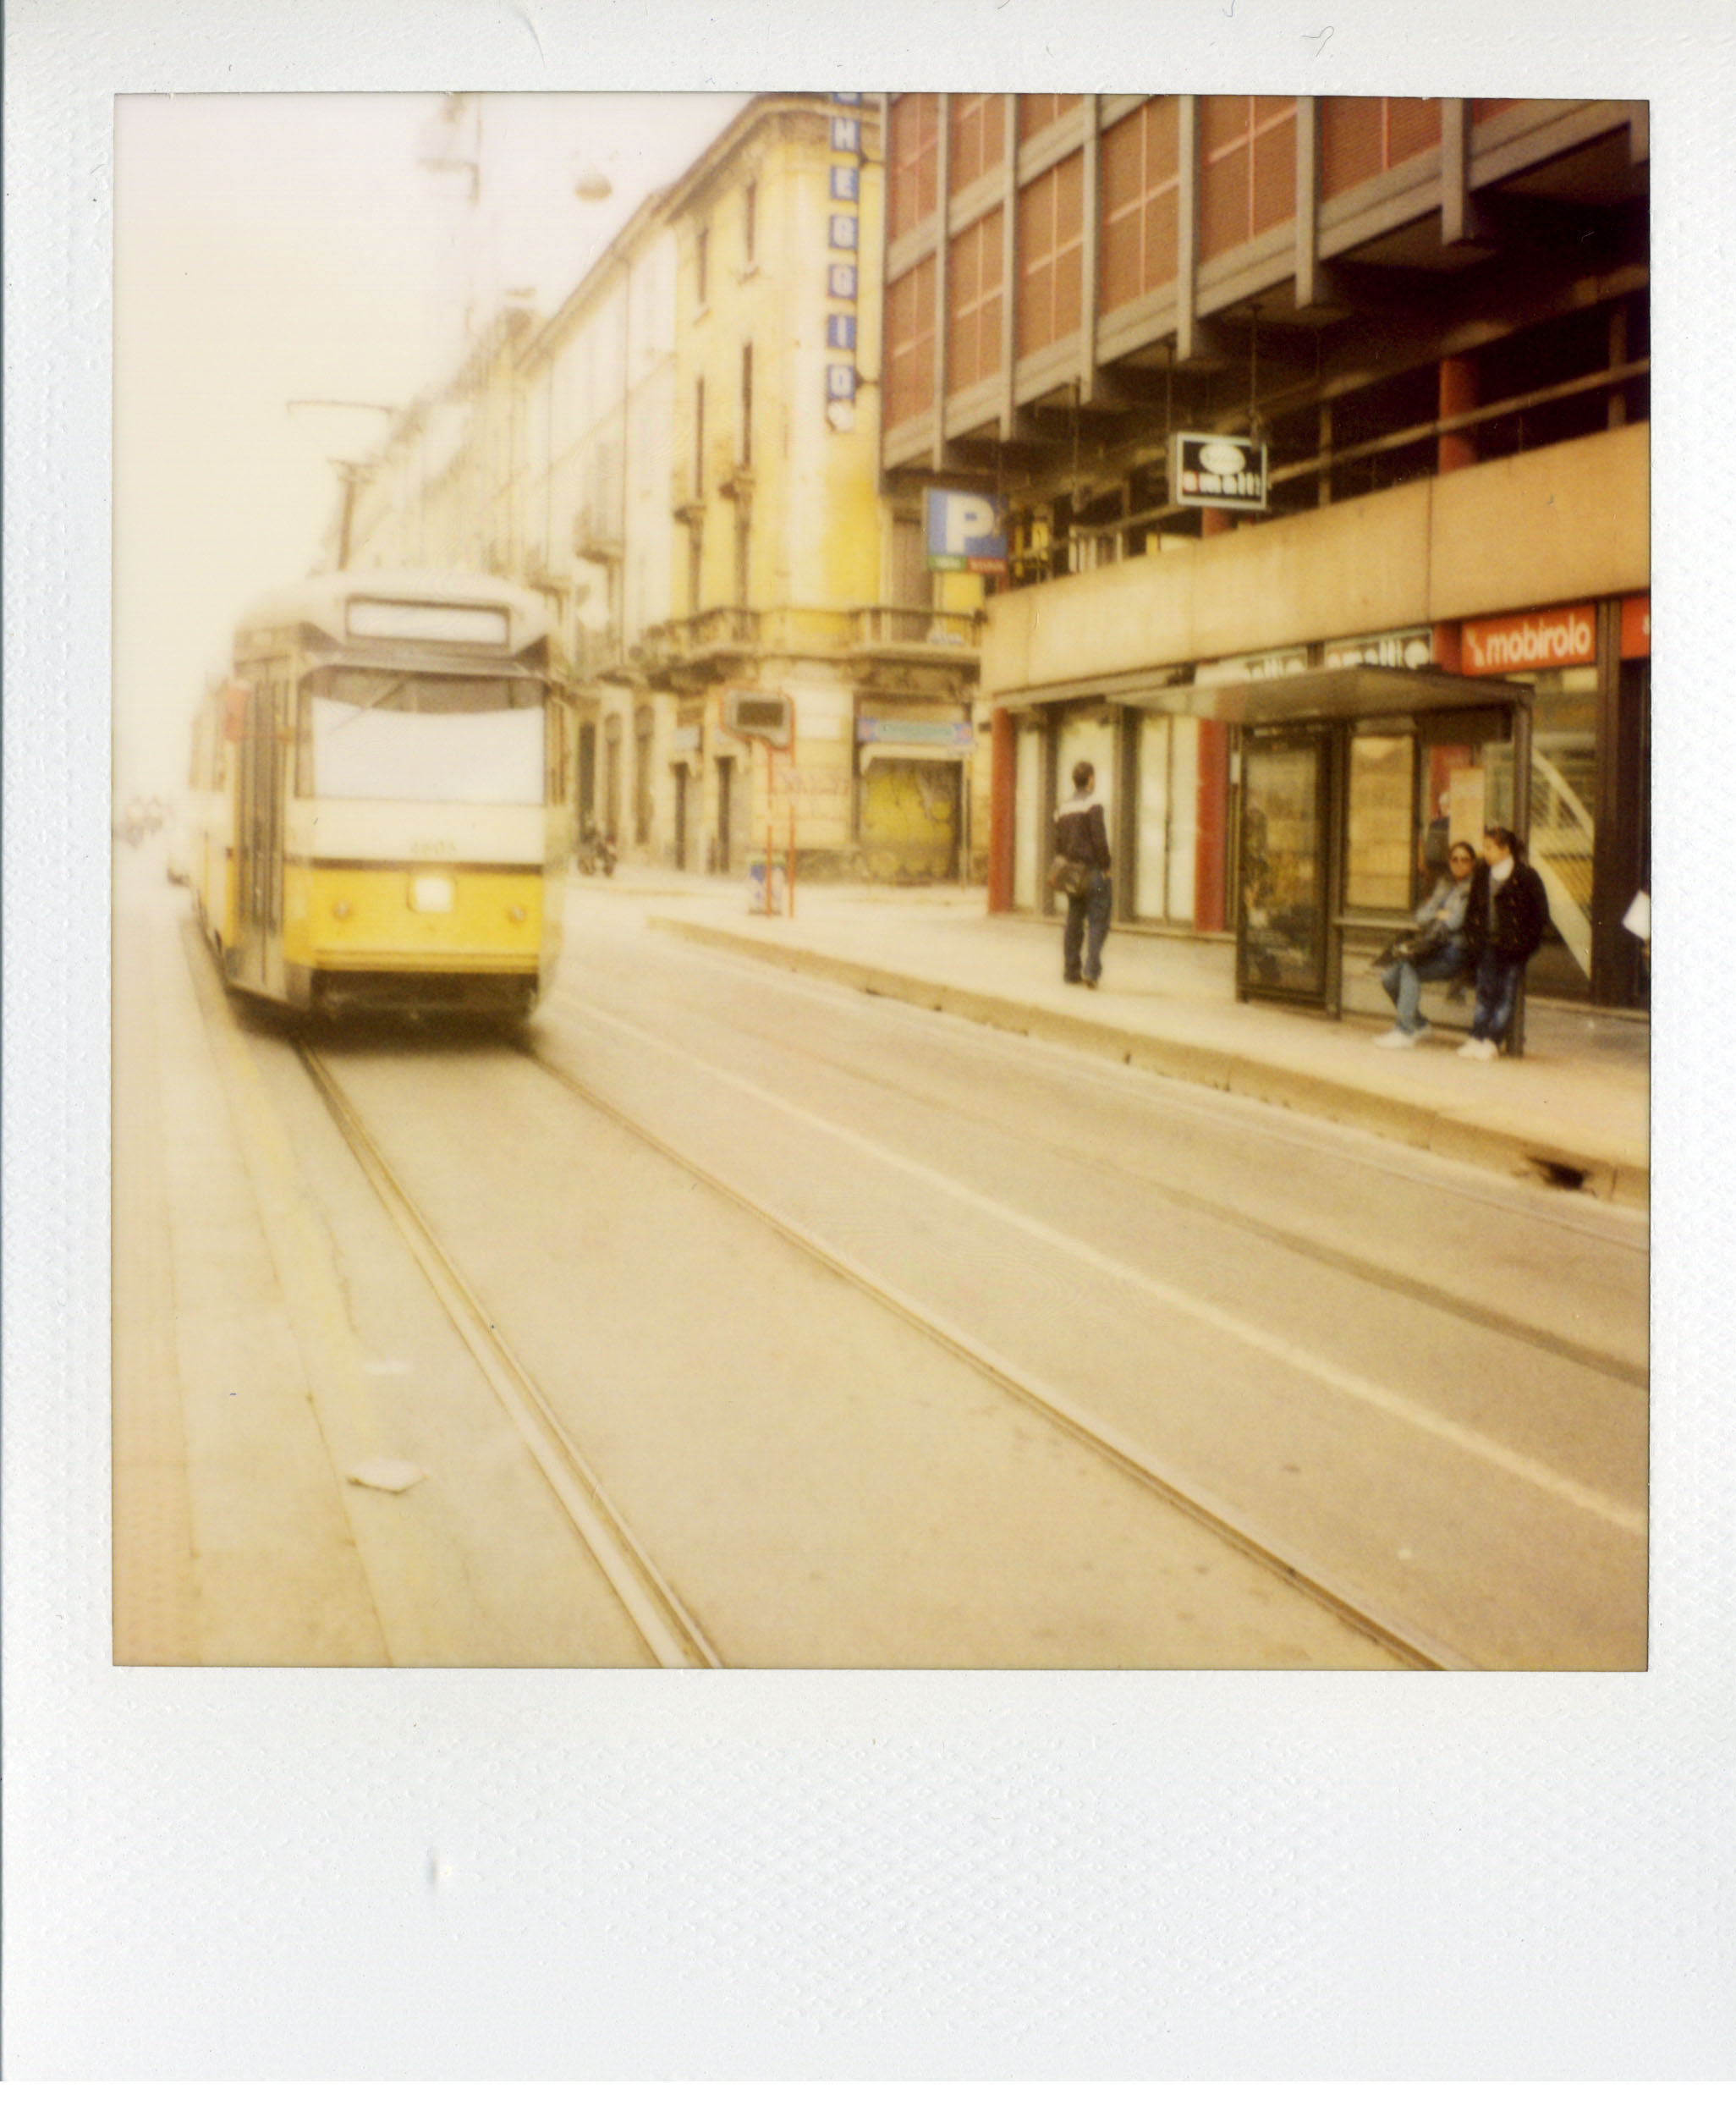 polaroid no.2 tram in Milan